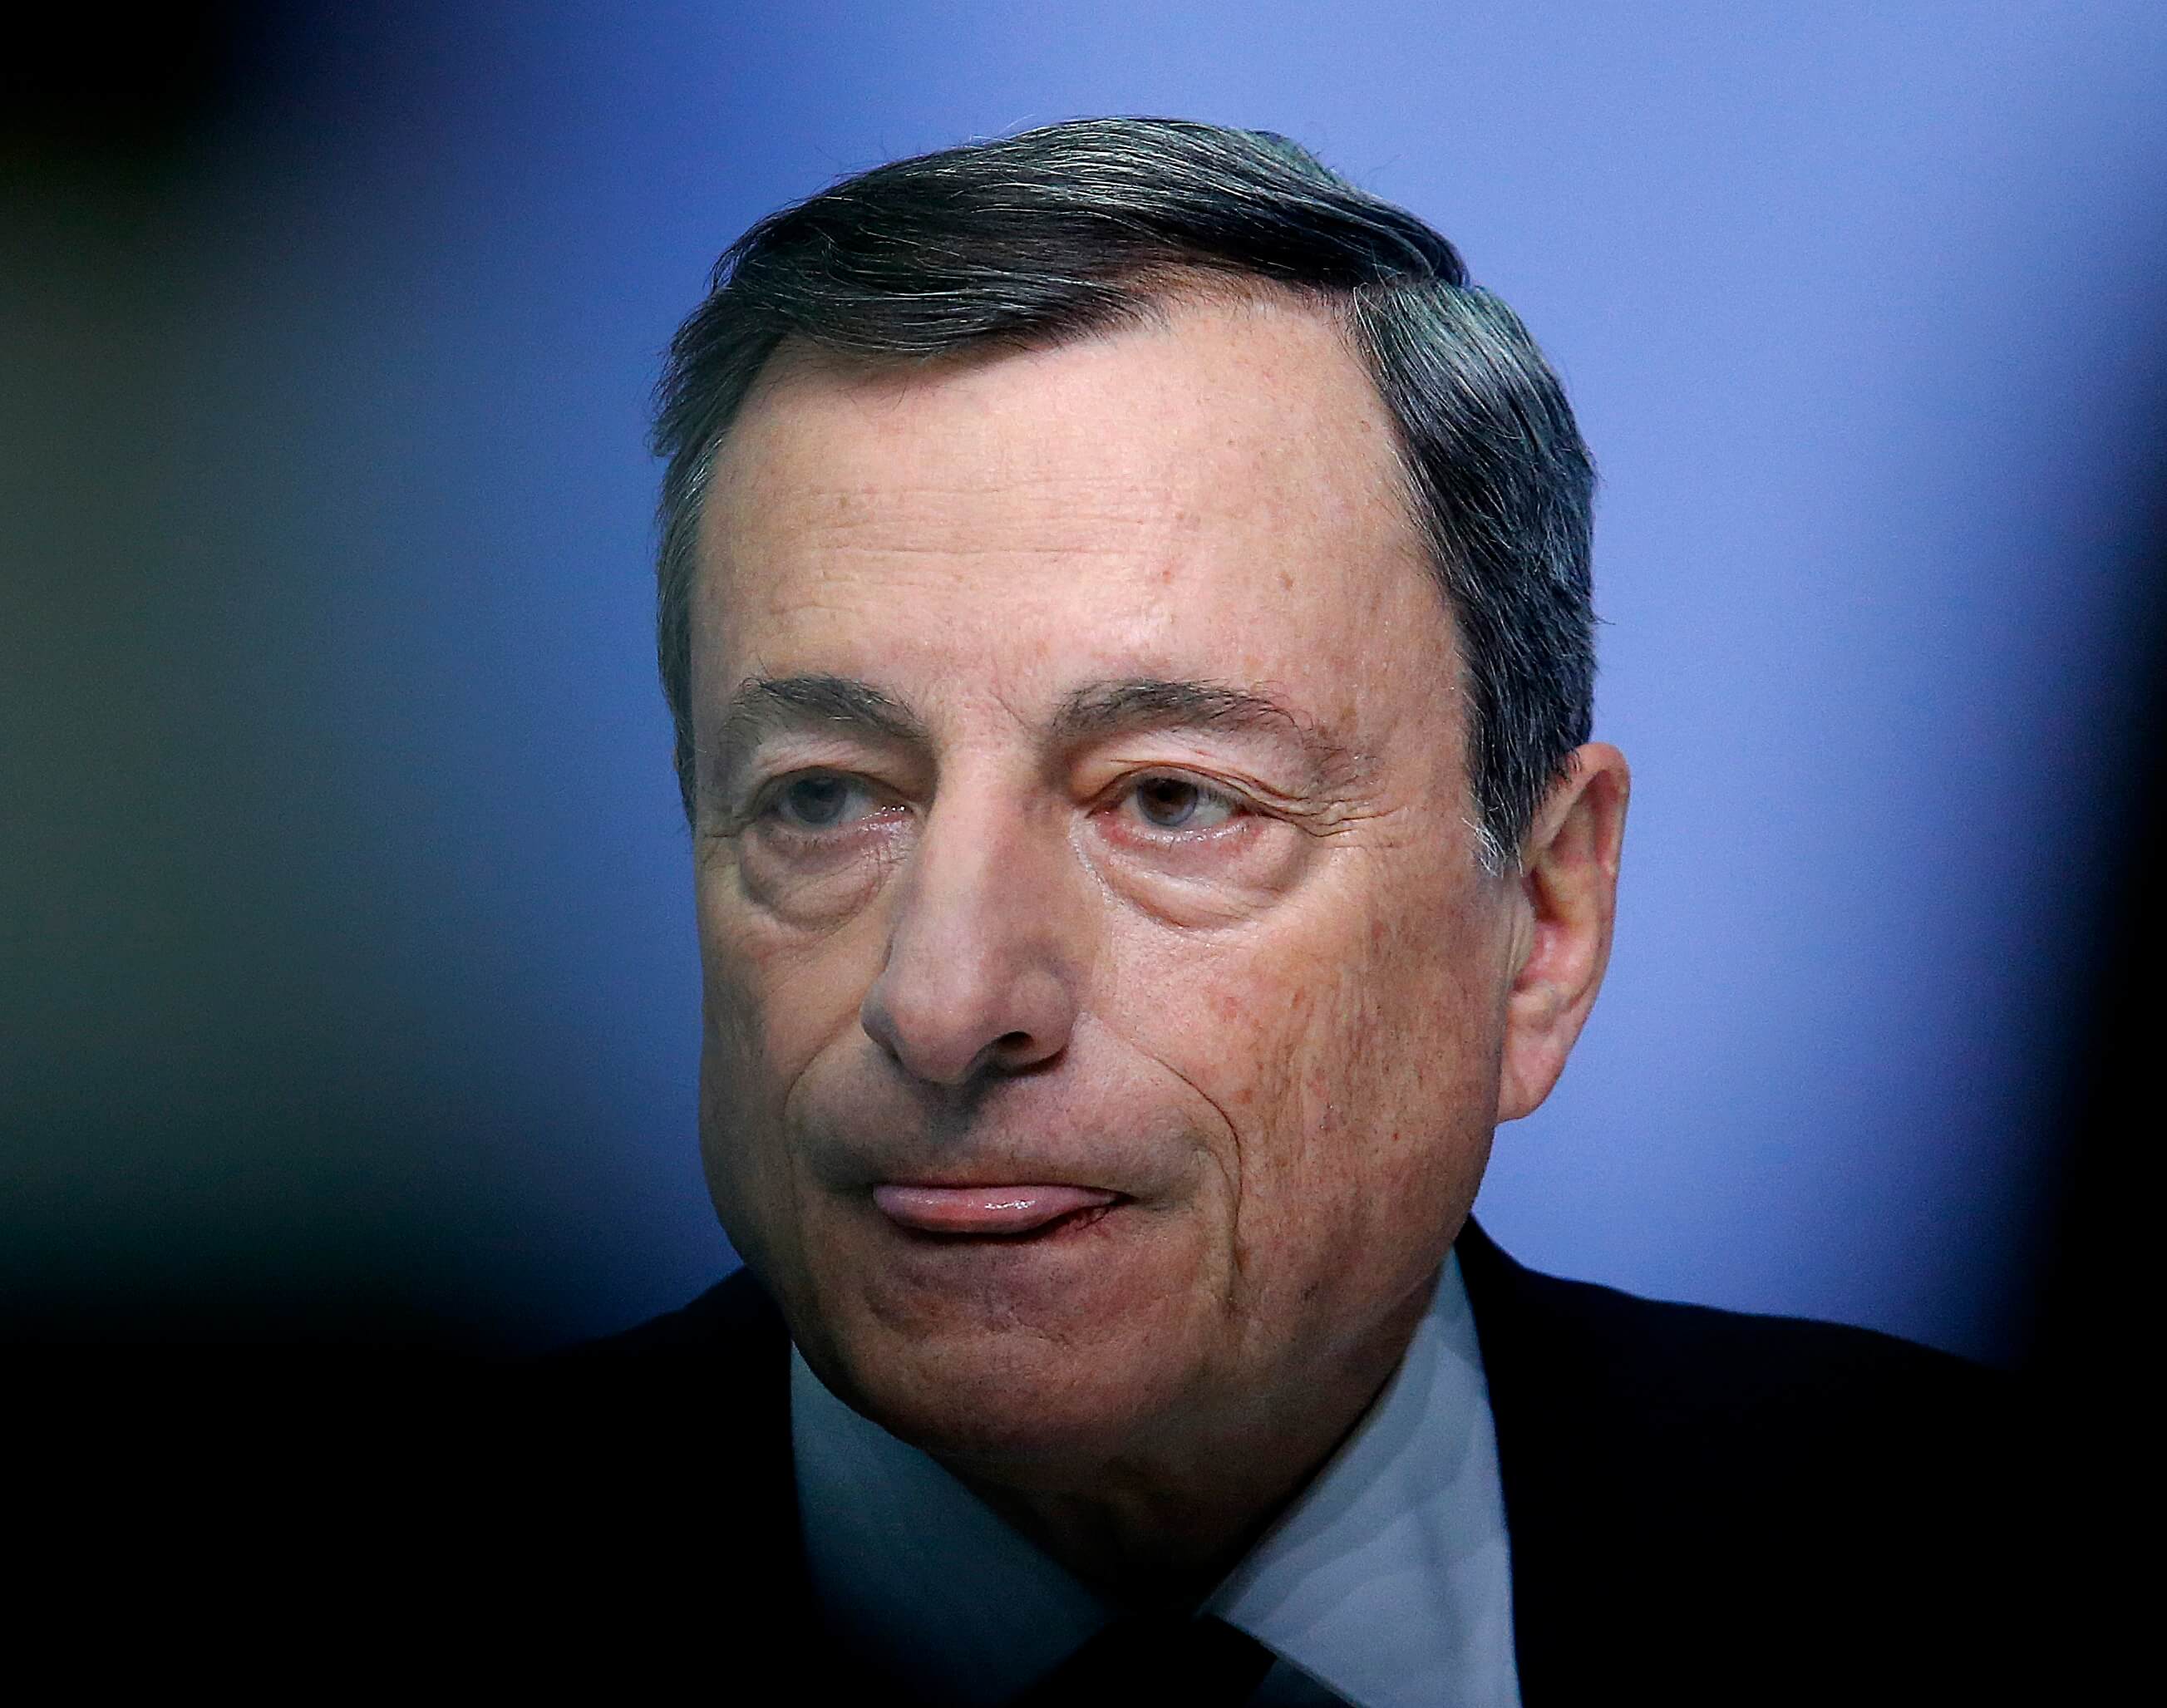 Draghi critica Estados Unidos por romper acuerdo agitar mercados cambiarios